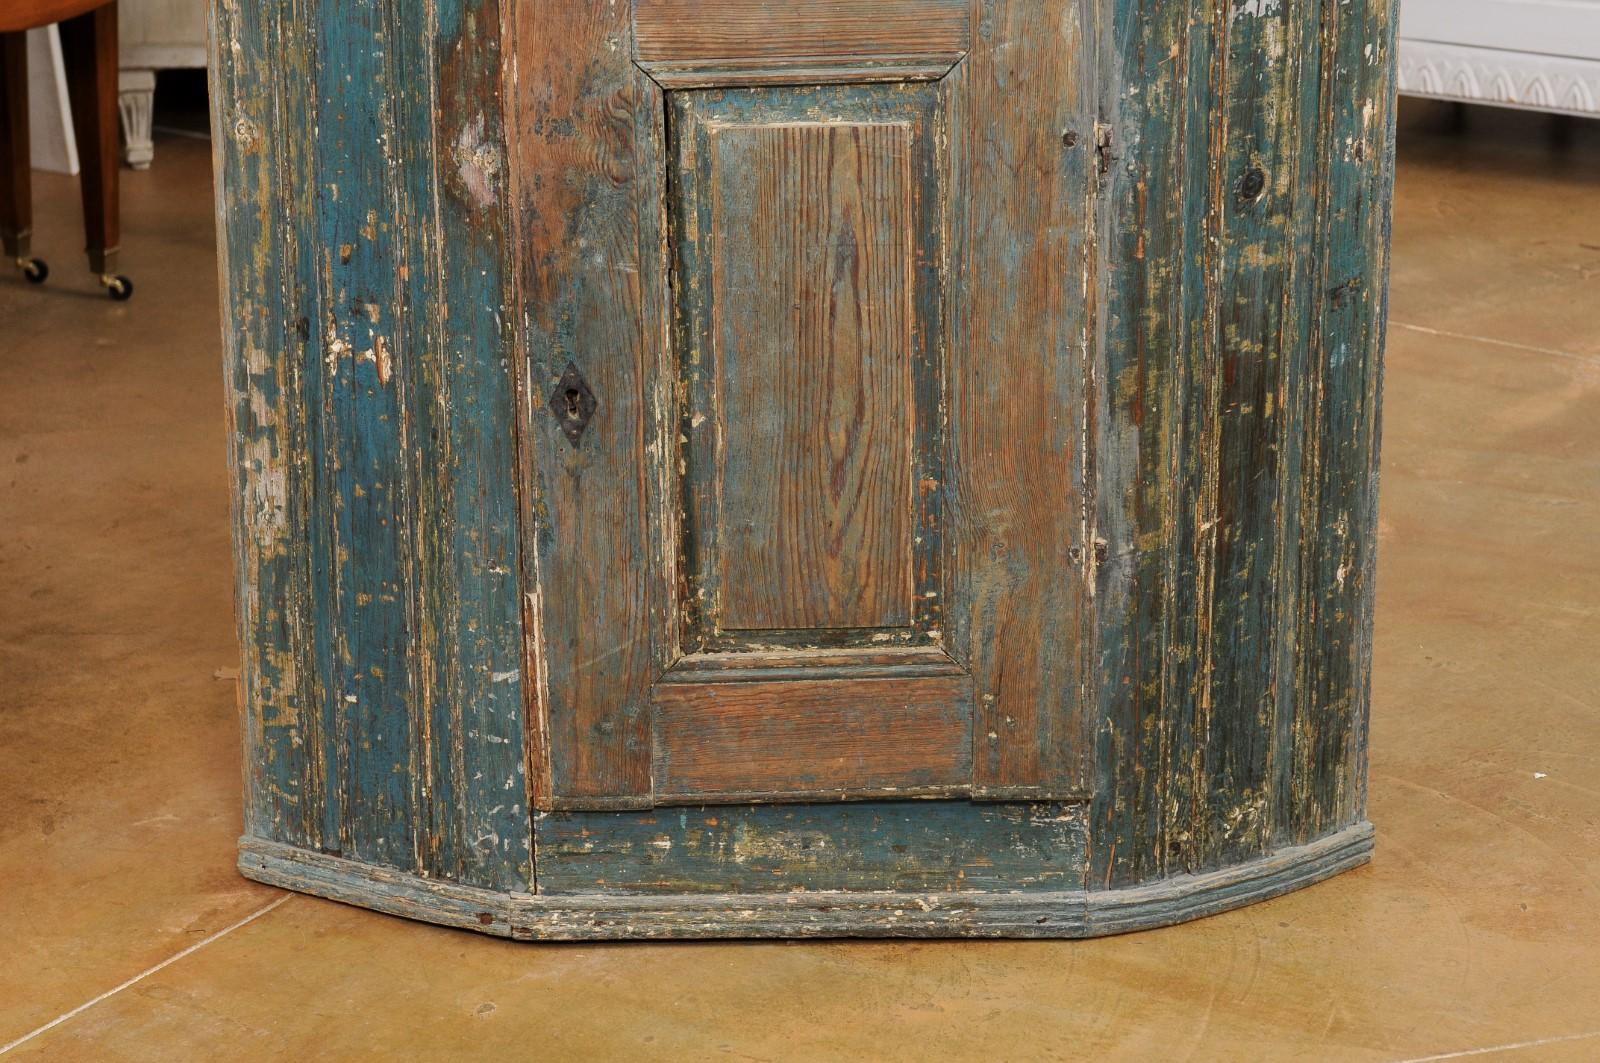 Meuble d'angle en bois peint d'époque gustavienne suédoise, datant de la fin du XVIIIe siècle, avec une peinture bleue, une seule porte et un aspect usé par le temps. Créée en Suède au cours de la dernière décennie du XVIIIe siècle, cette armoire